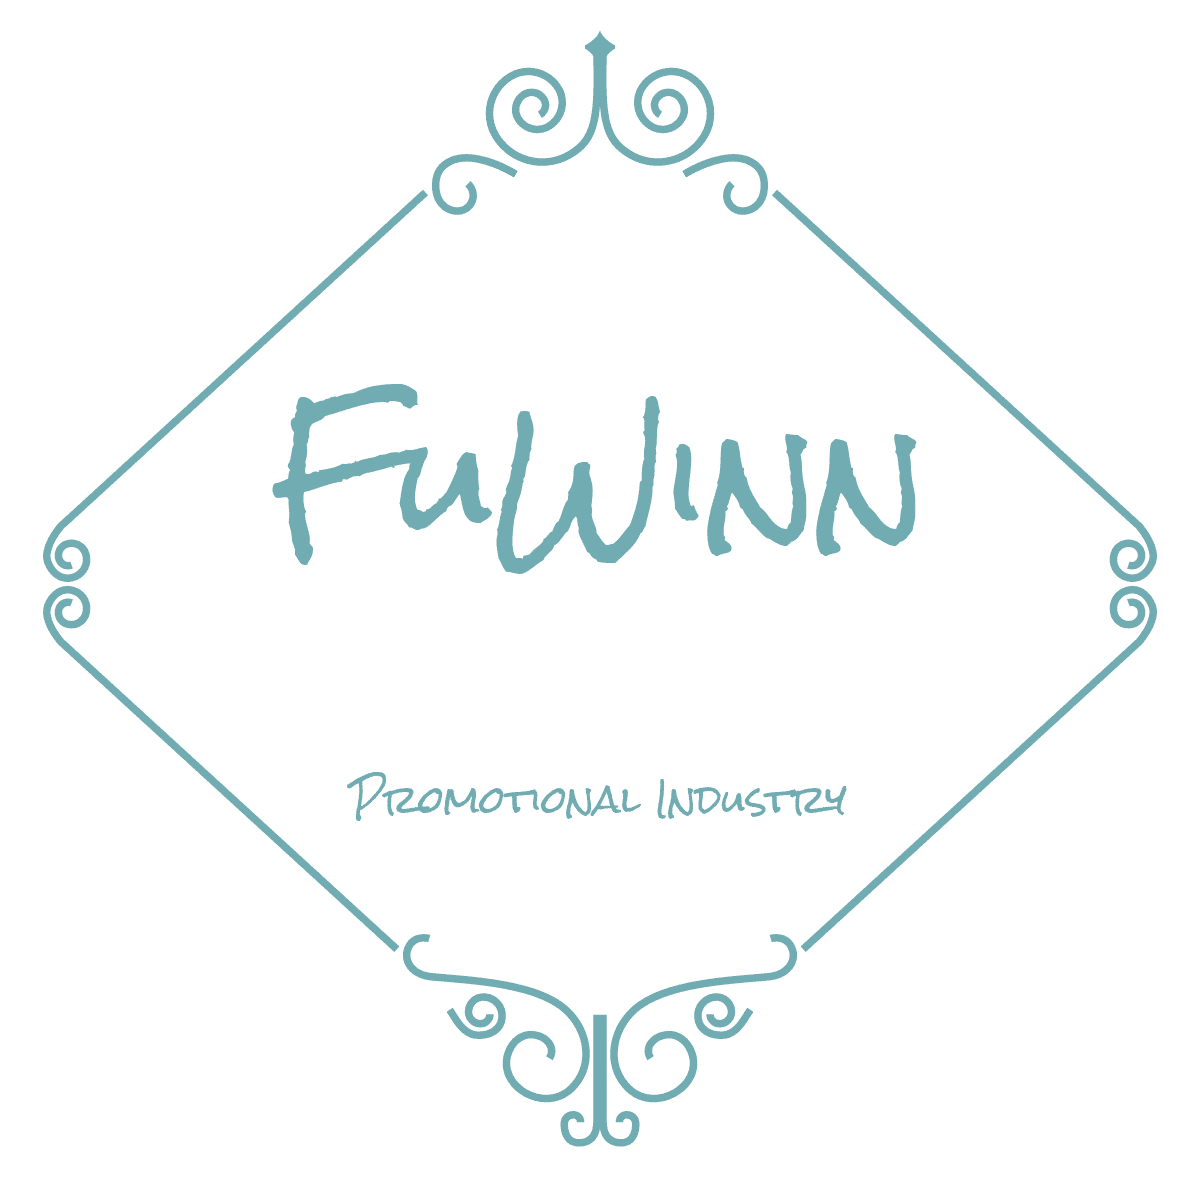 promotional industry logo from fuwinn